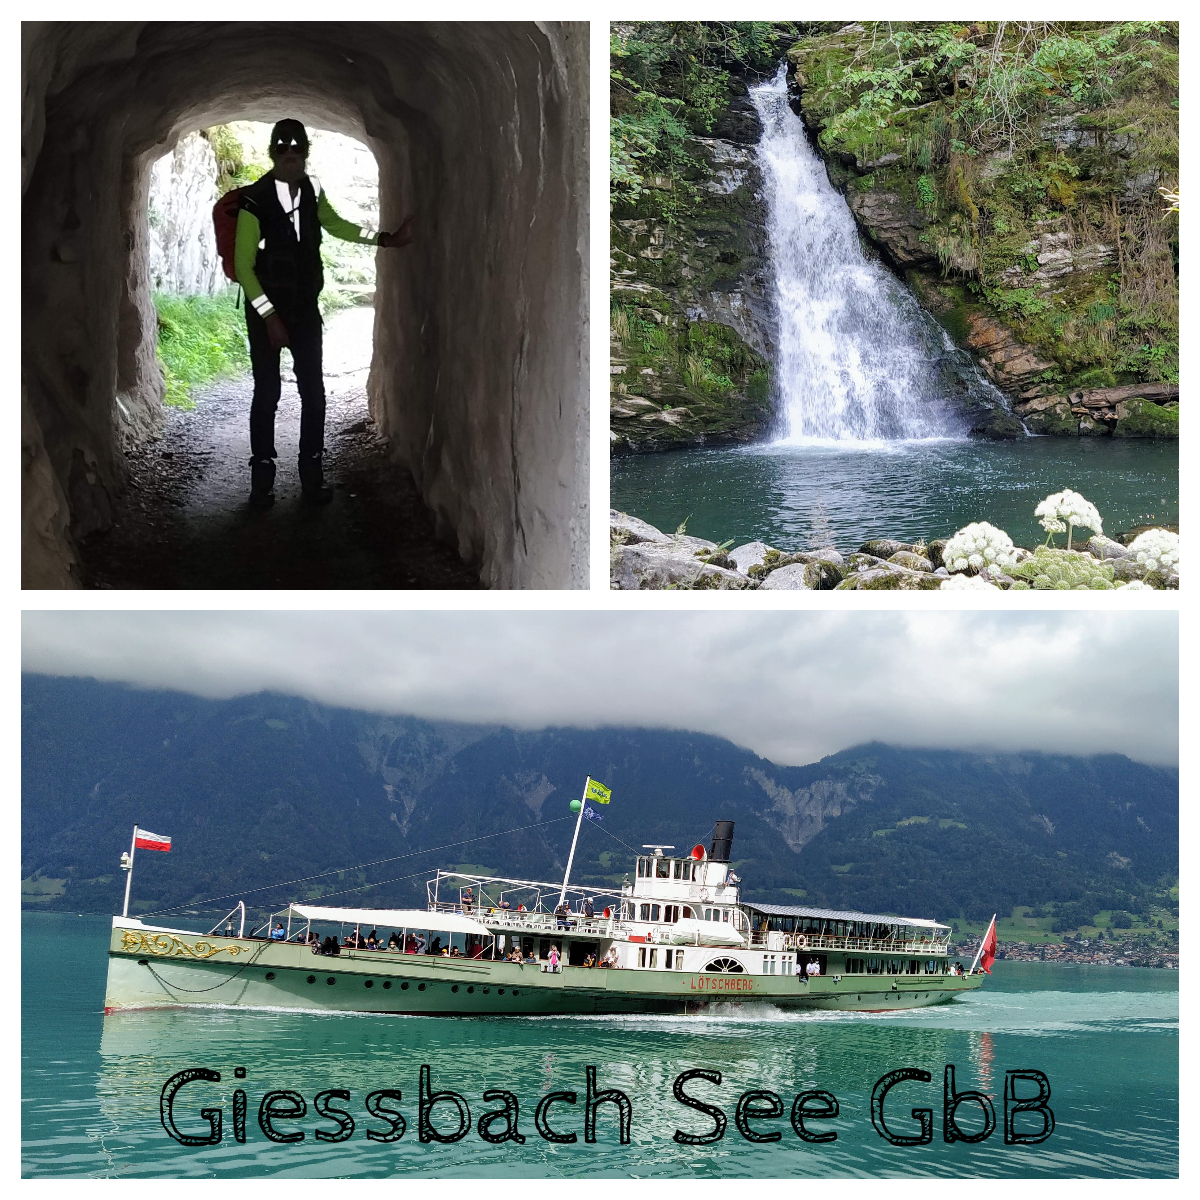 Giessbach-See-GbB